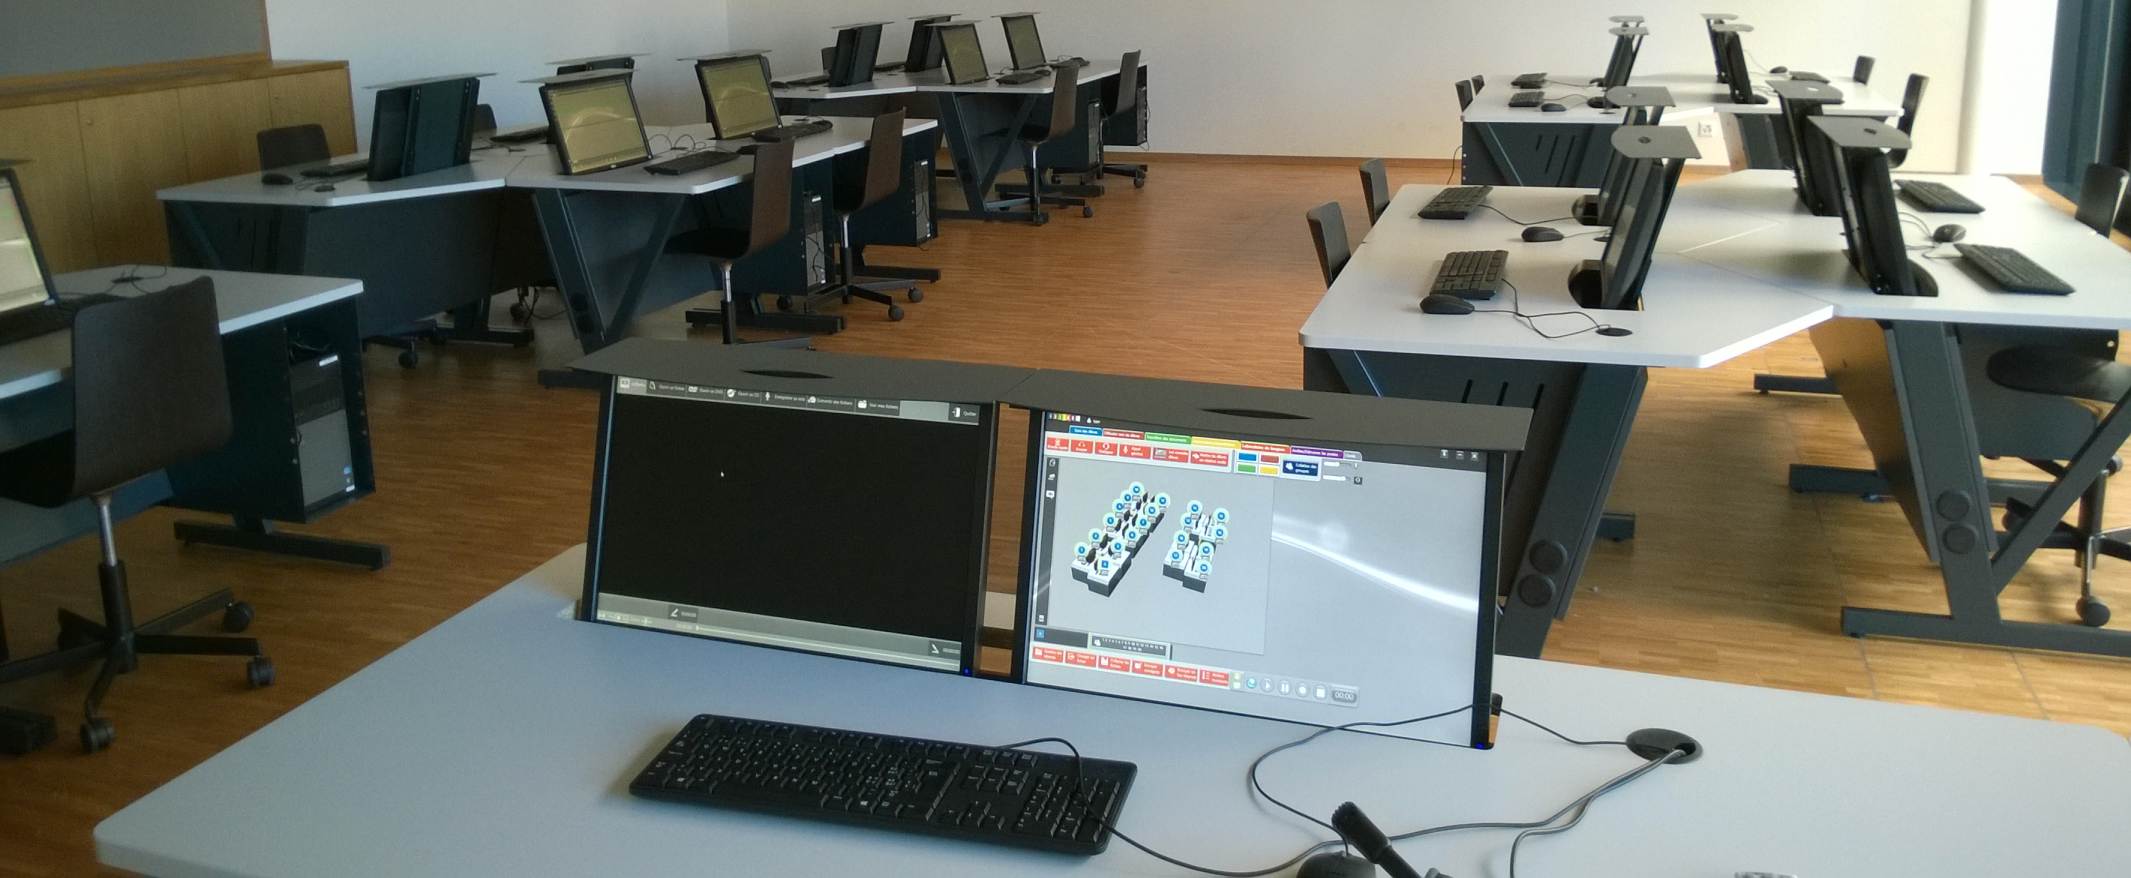 laboratoire de langues IxiLabo en Suisse